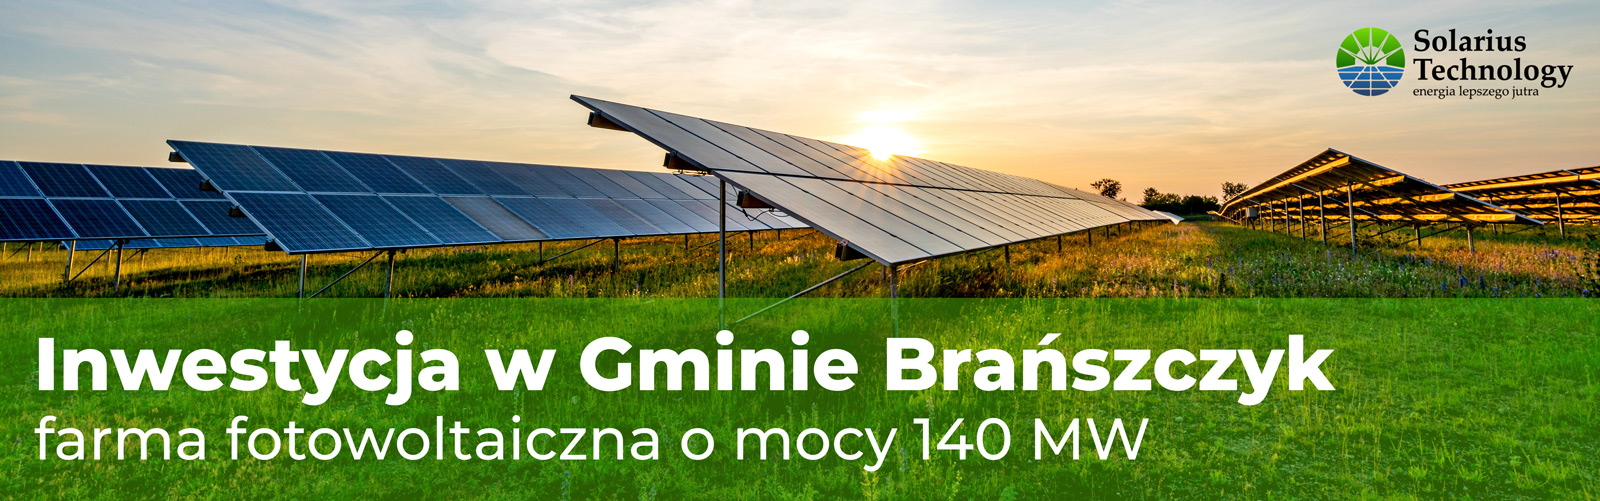 Inwestycja w Gminie Brańszczyk - farma fotowoltaiczna o mocy 140 MW